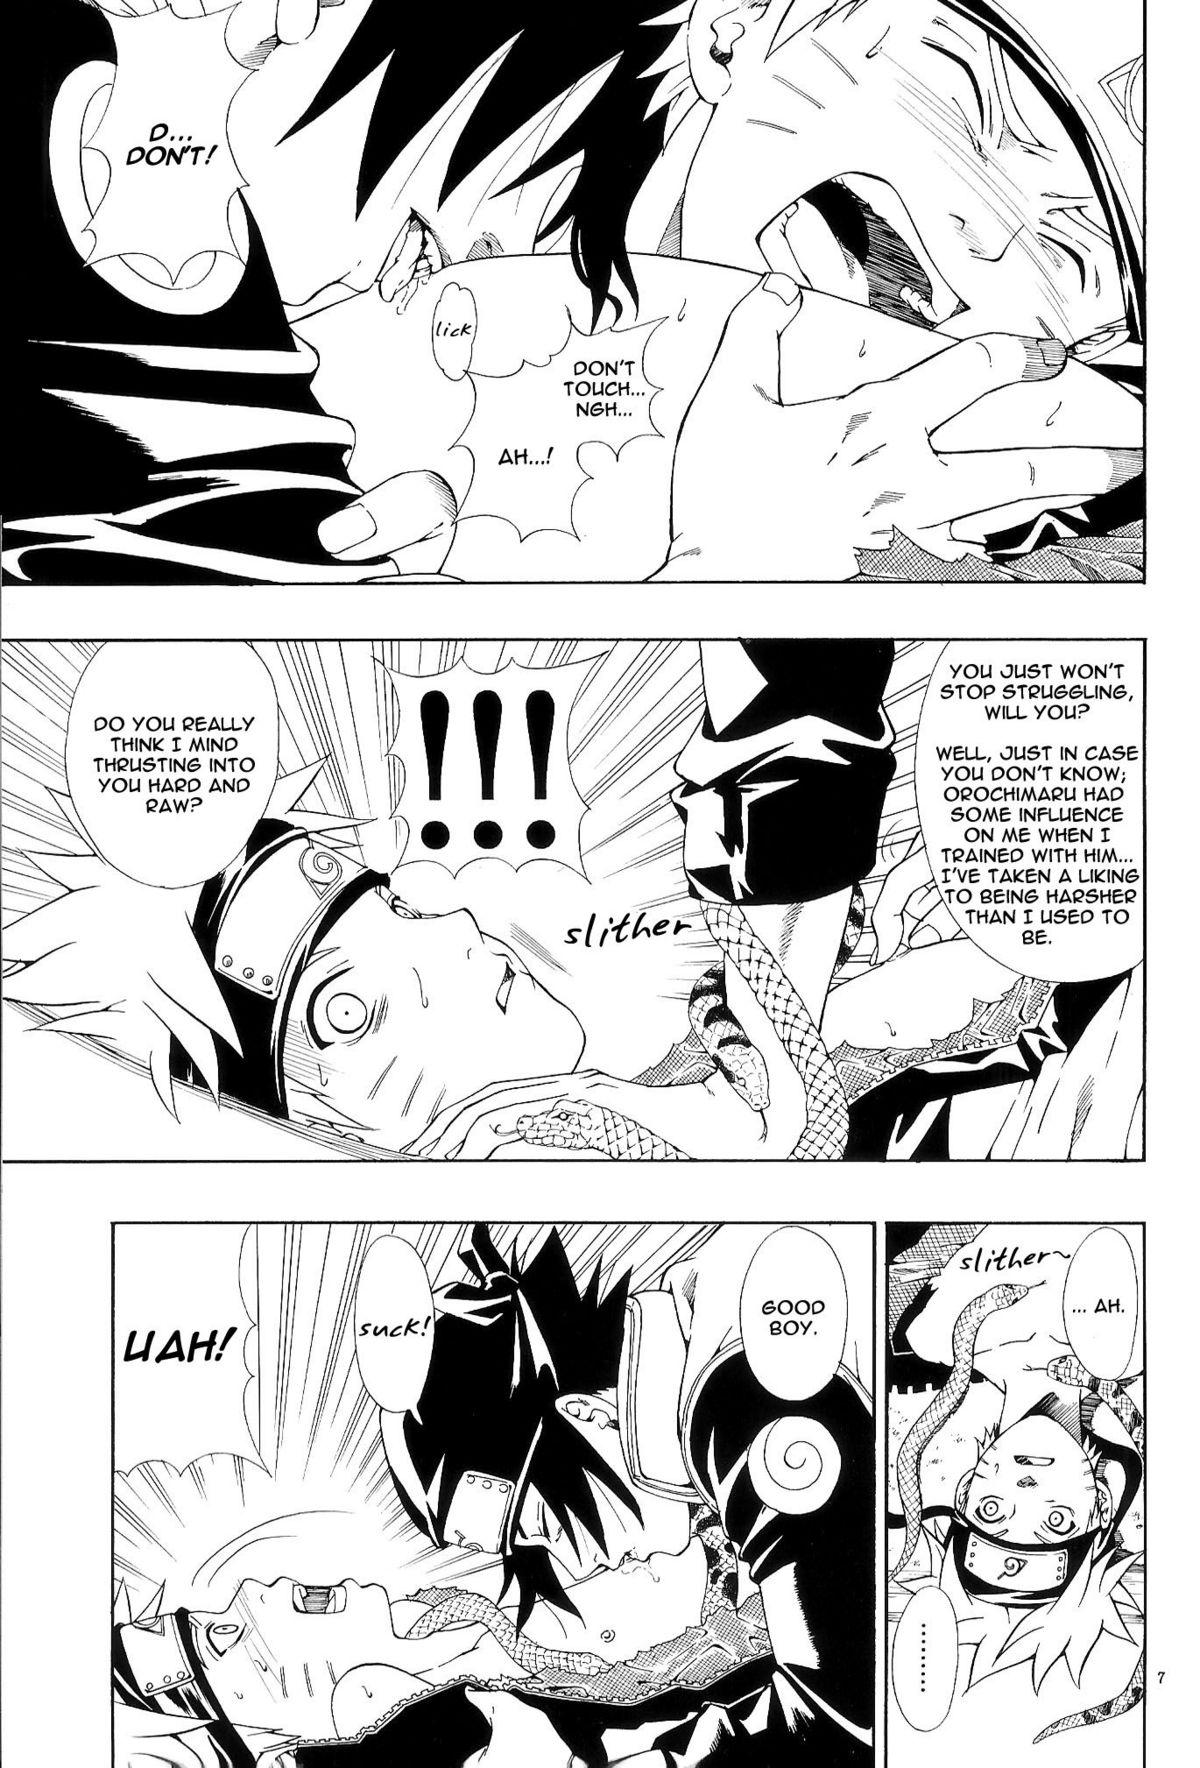 Ssbbw ERO ERO²: Volume 1.5 (NARUTO) [Sasuke X Naruto] YAOI -ENG- - Naruto Hot - Page 6